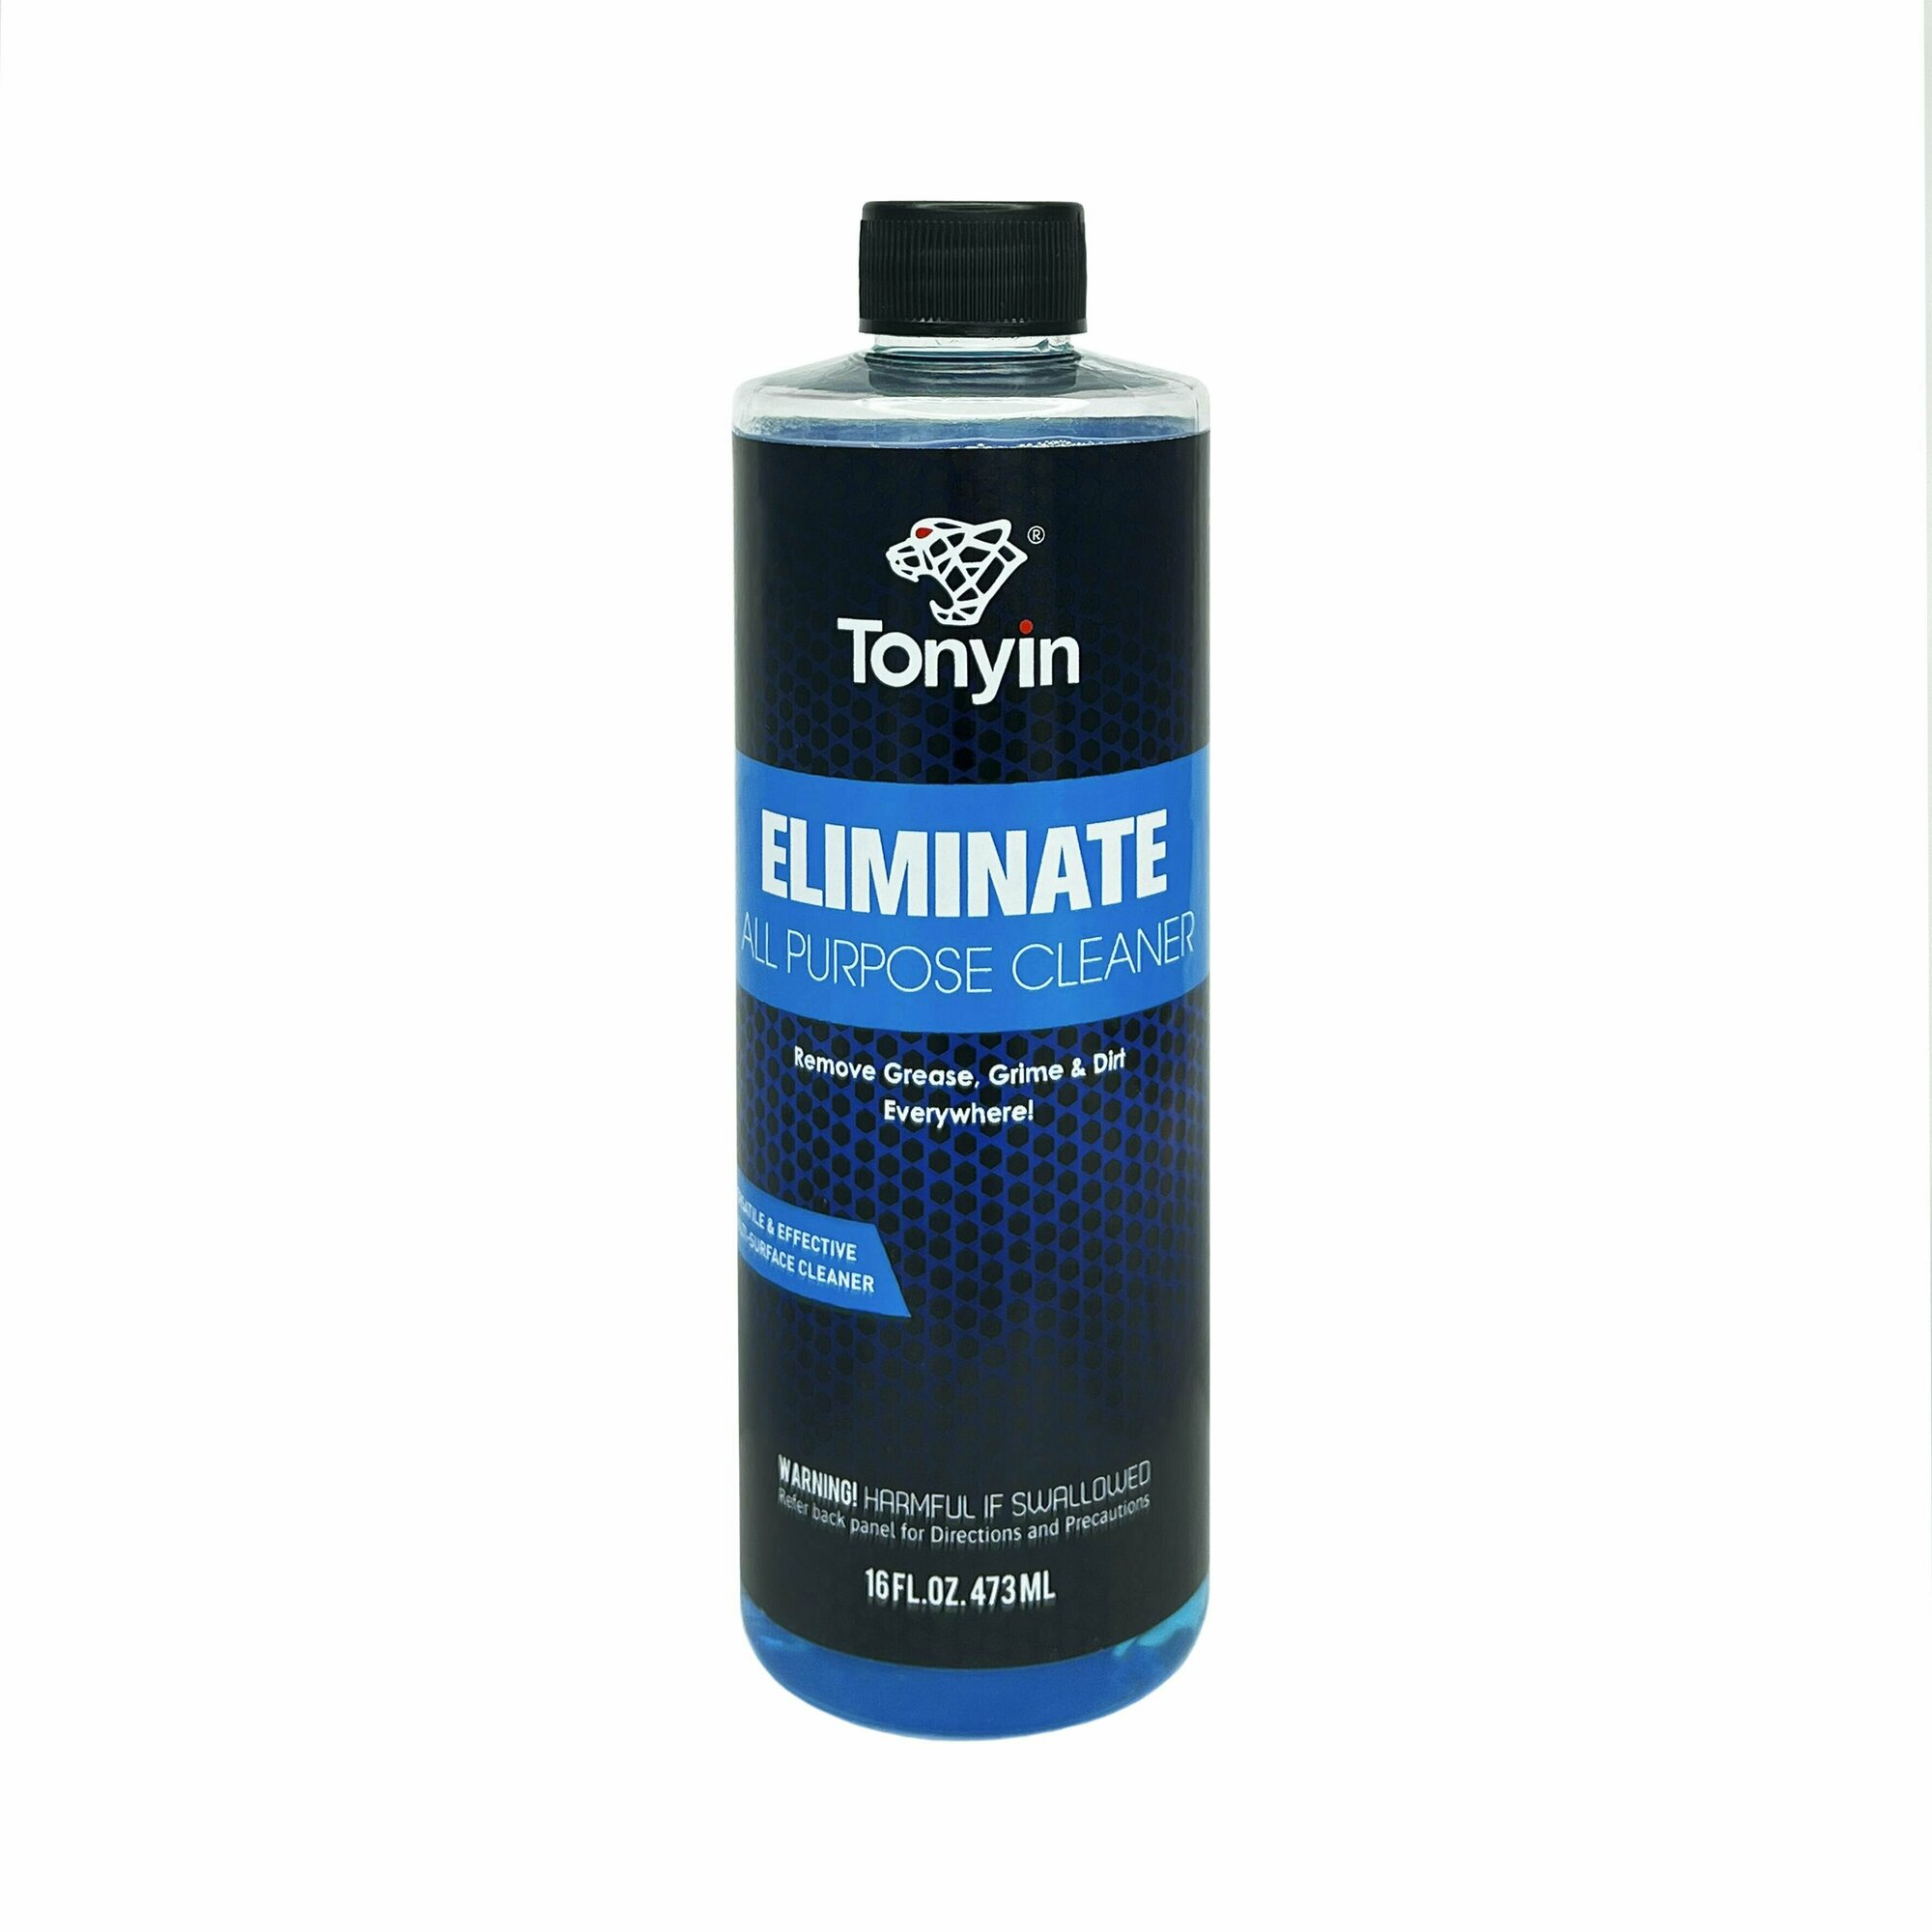 TN08 Универсальный очиститель ELIMINATE ALL PURPOSE CLEANER TONYIN, 473 мл.